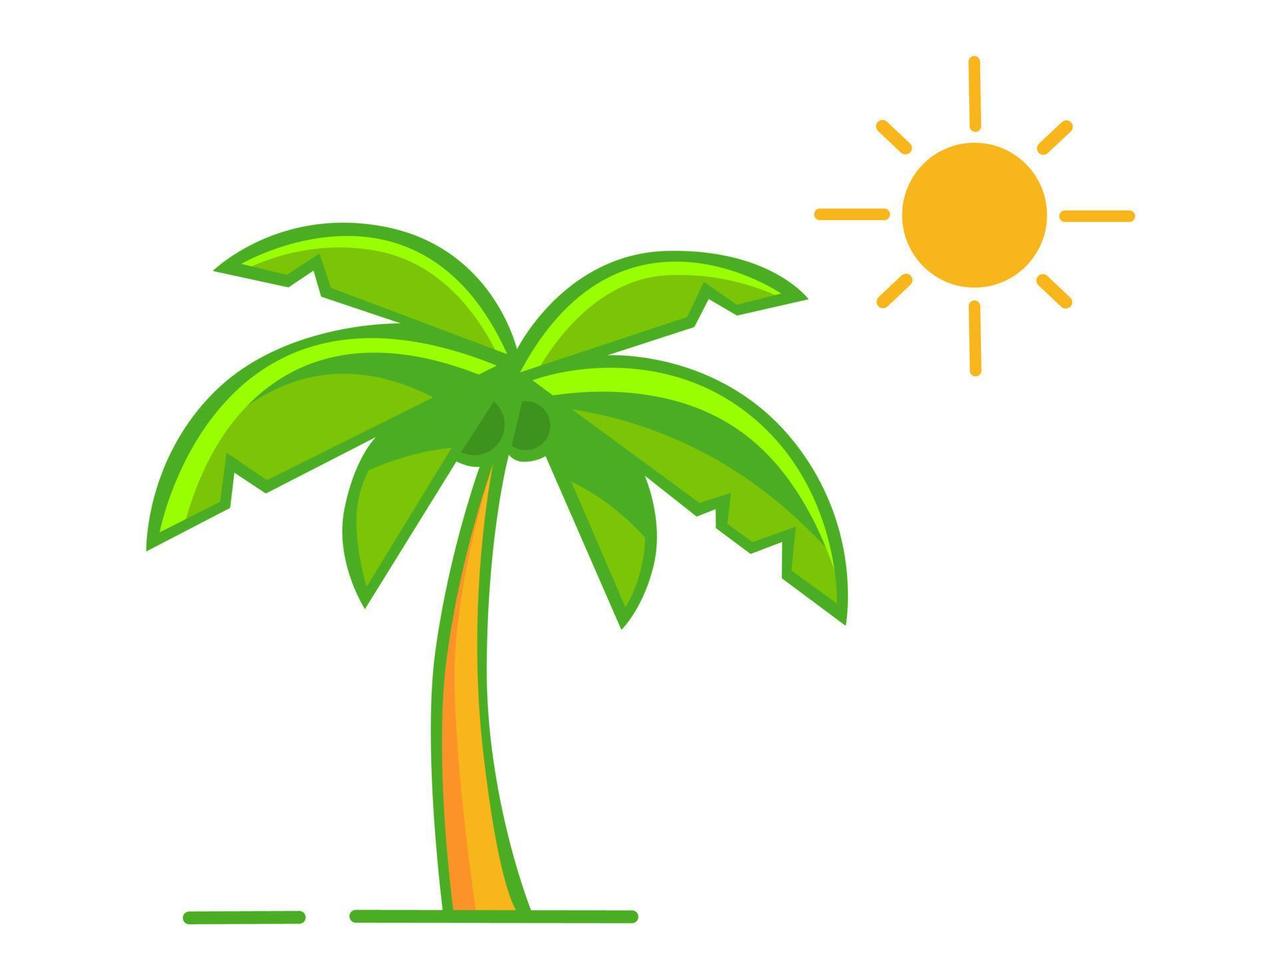 beach coconut tree shape vector, icon or symbol design vector